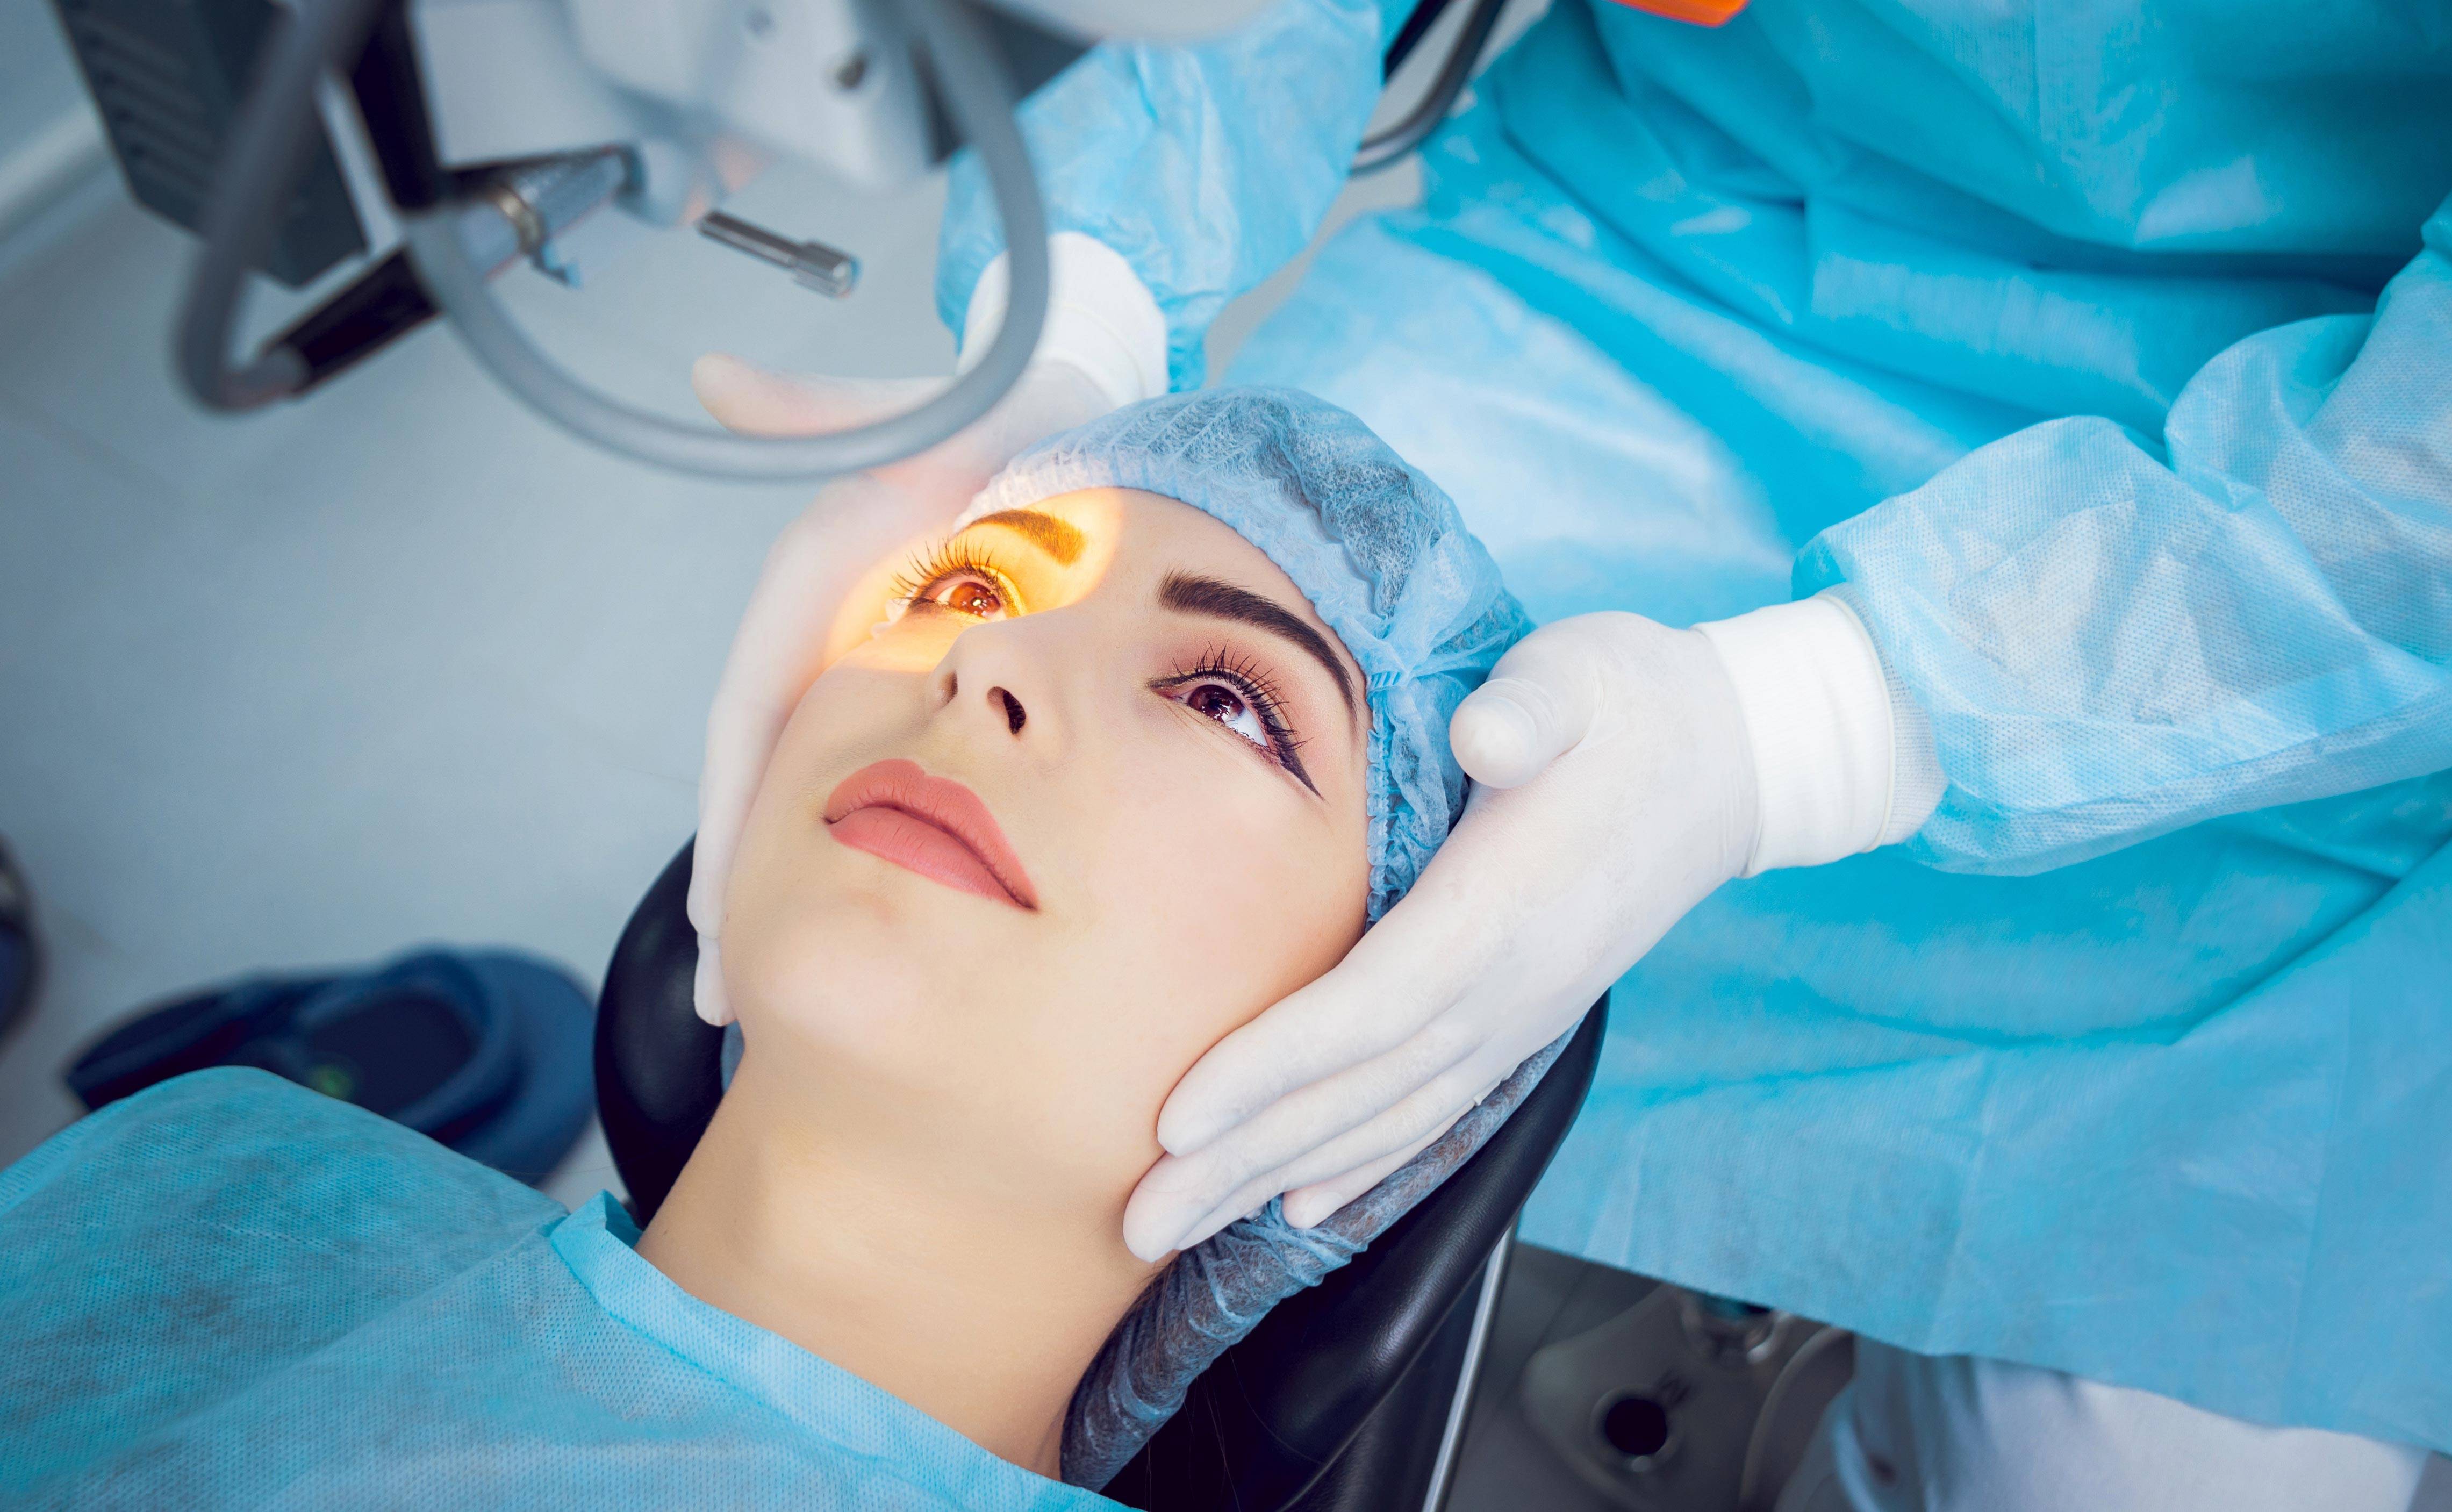 Капли для глаз после операции - что нельзя делать после лазерной коррекции, замены хрусталика, как вести себя после удаления катаракты, капли